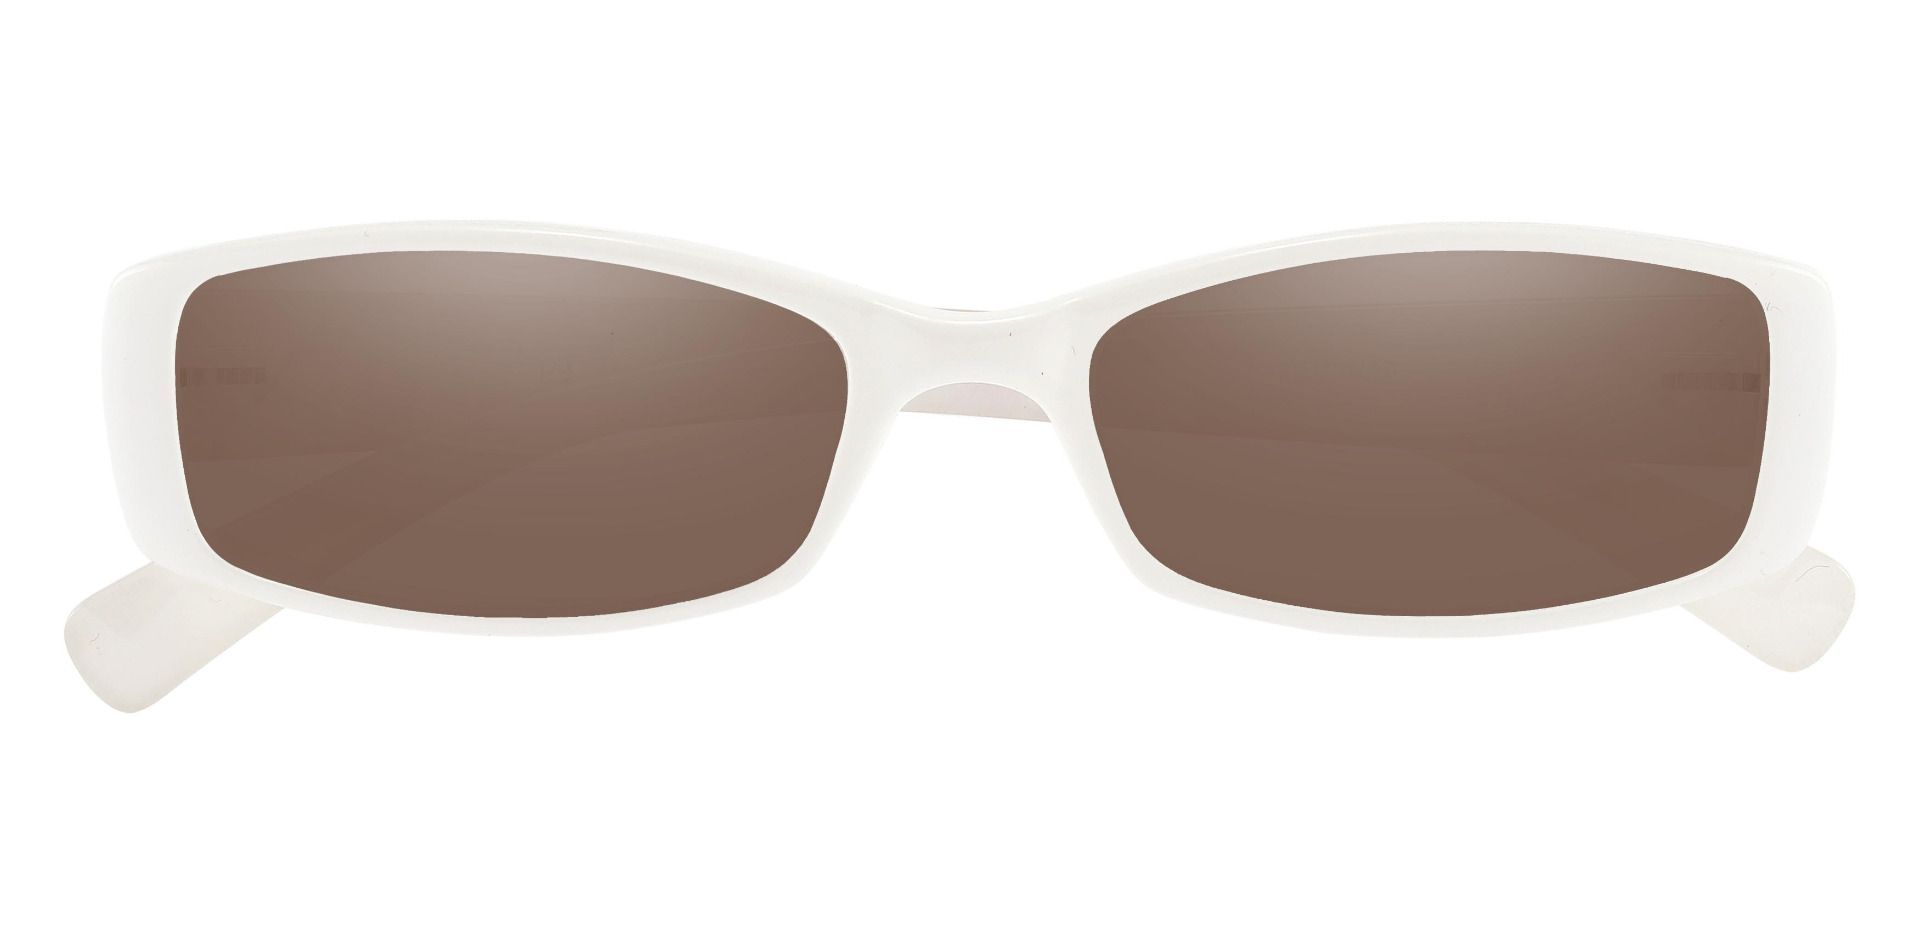 Medora Rectangle Reading Sunglasses - White Frame With Brown Lenses